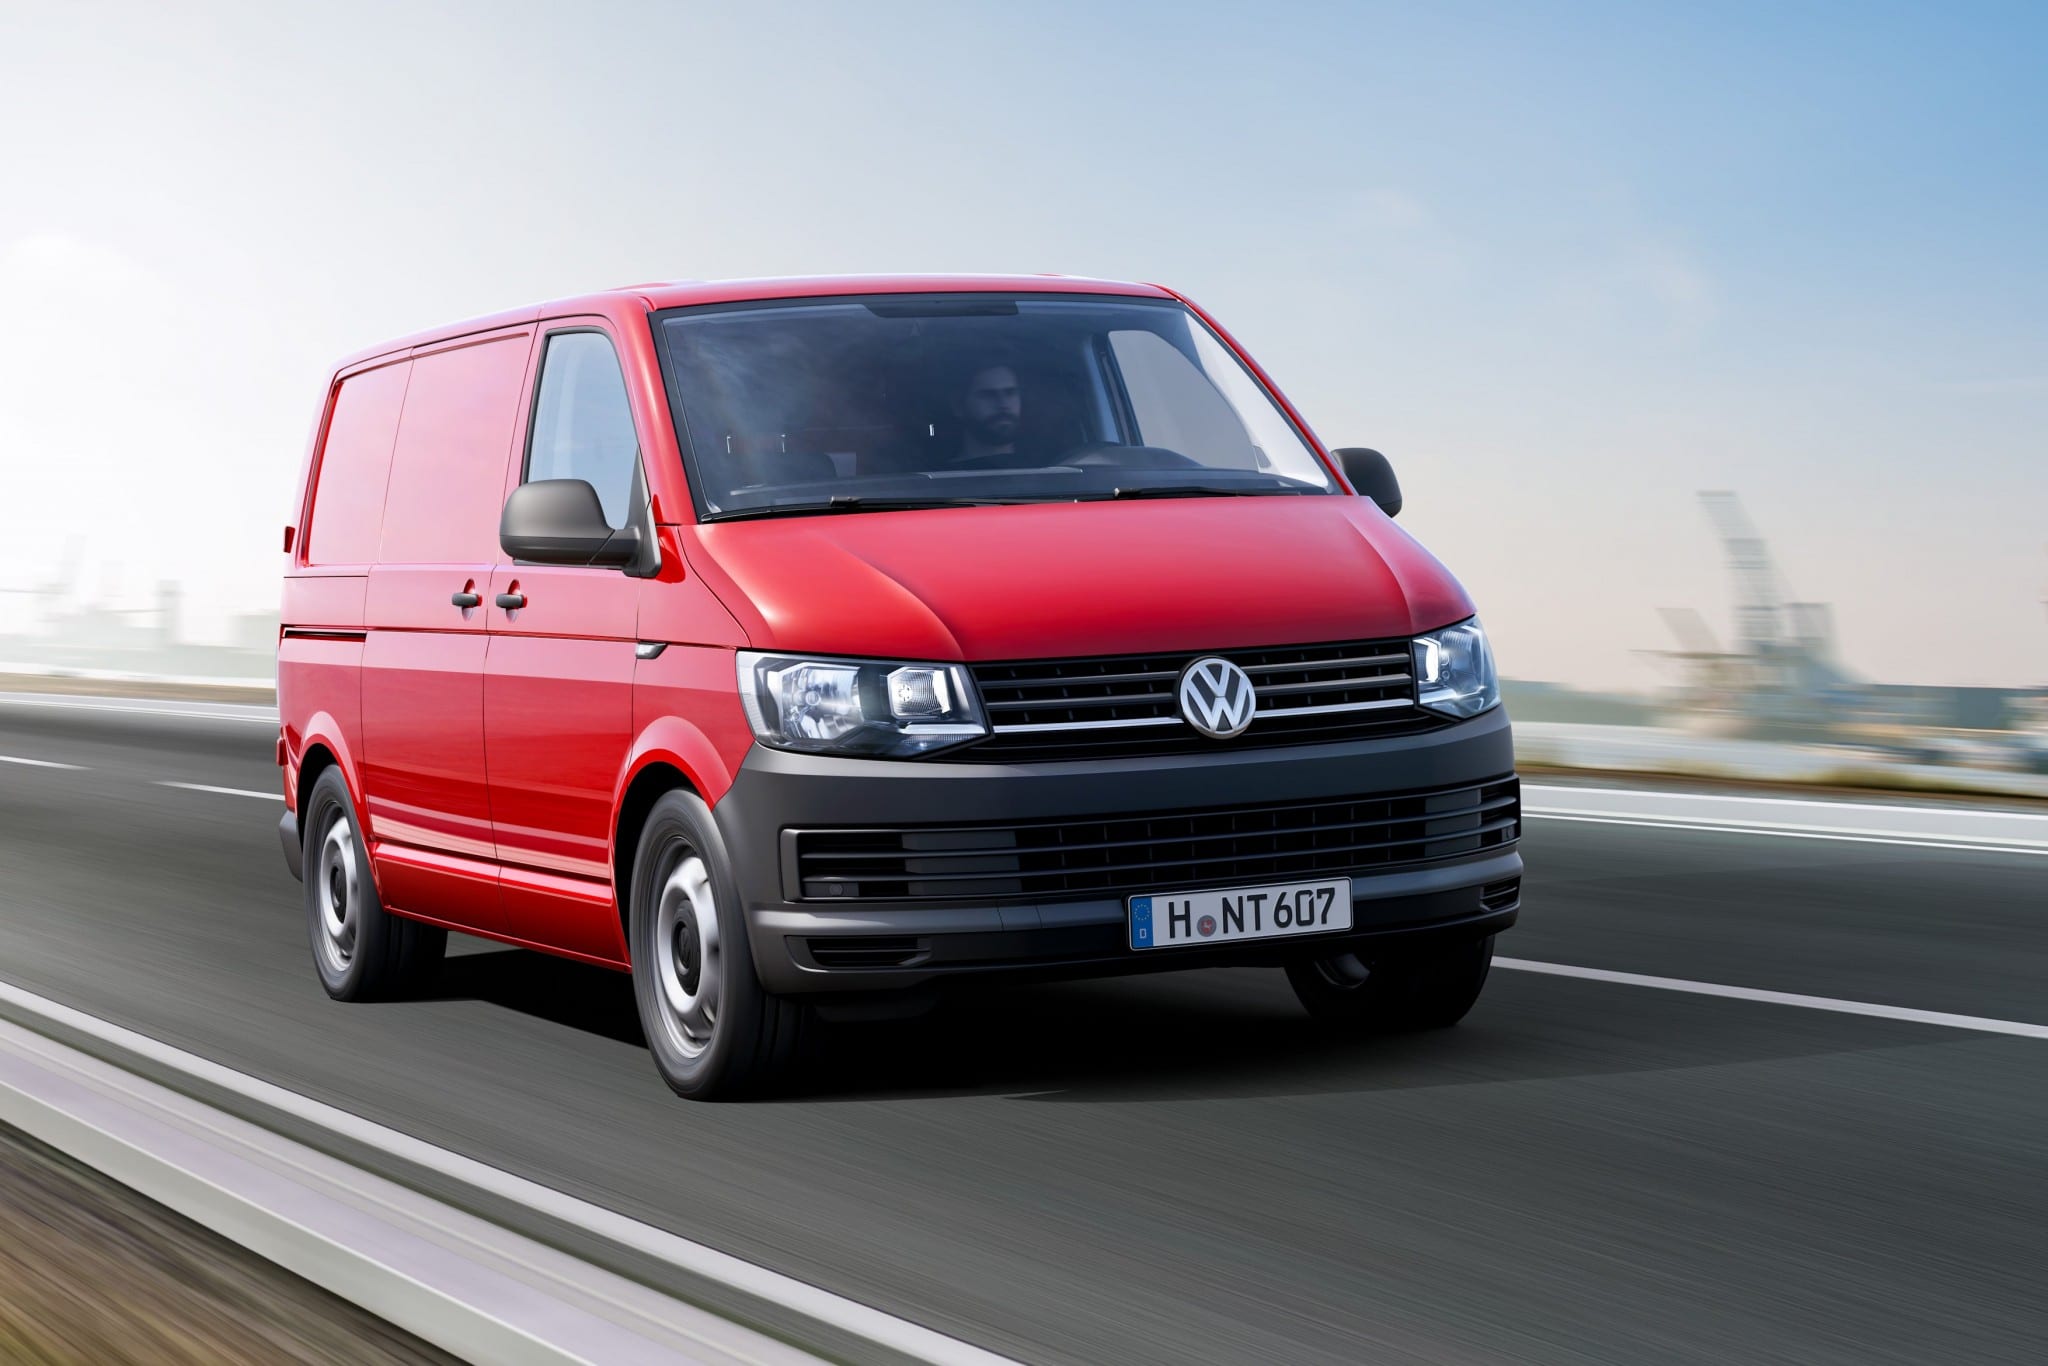 Volkswagen Transporter 2020 - Precio, características y fotos - Carhaus  comerciales